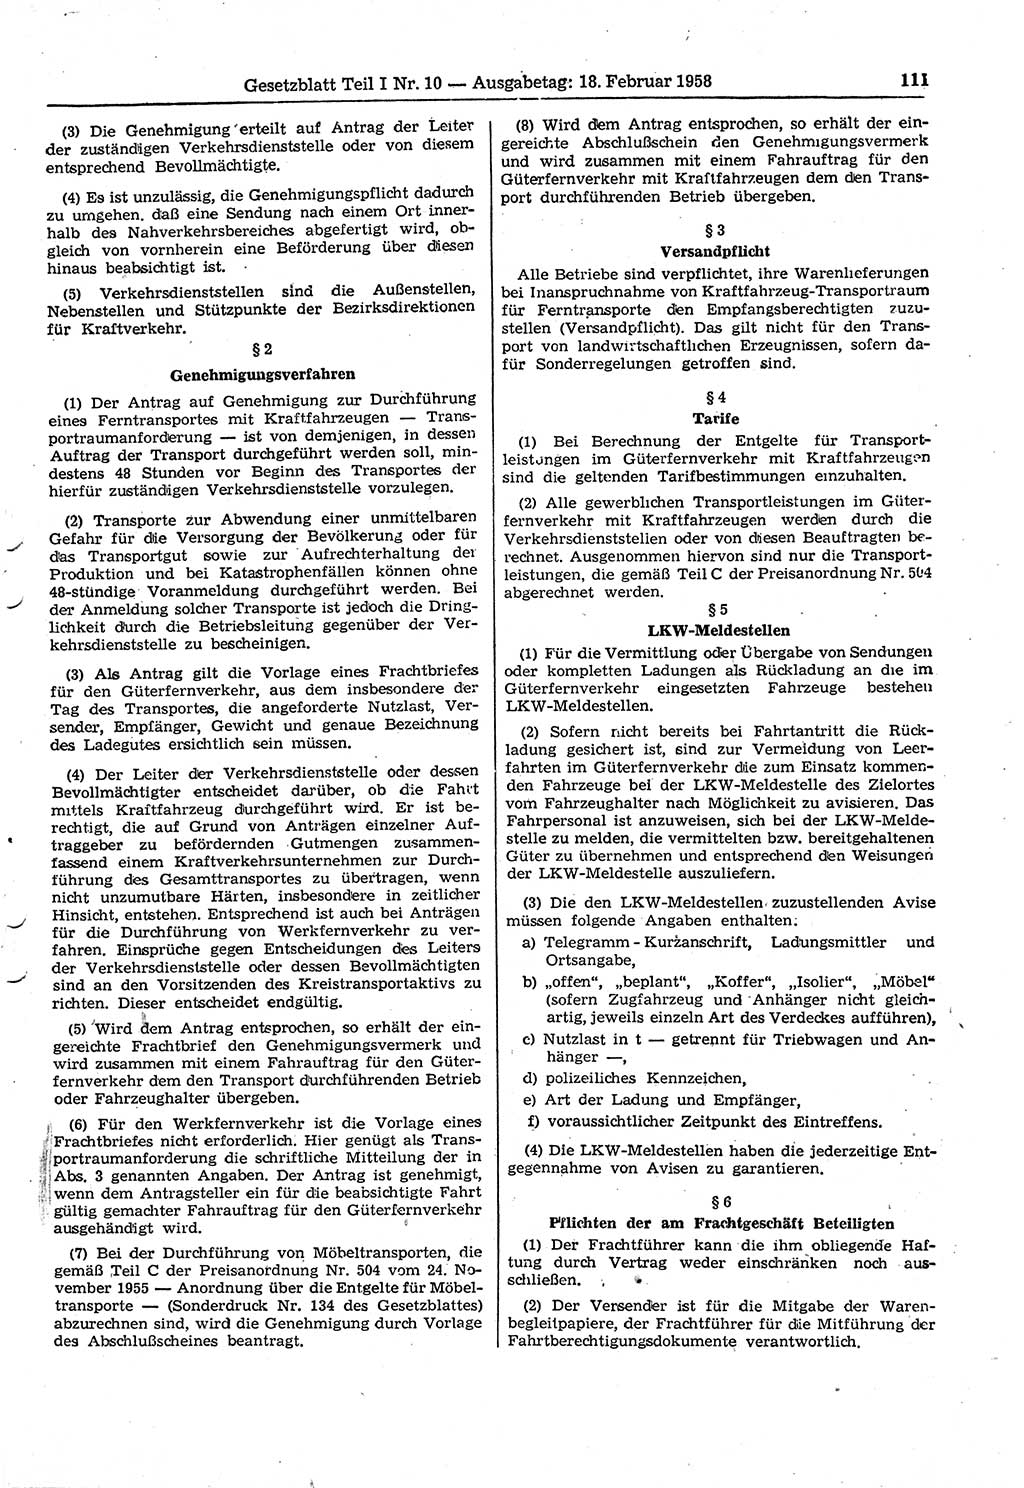 Gesetzblatt (GBl.) der Deutschen Demokratischen Republik (DDR) Teil Ⅰ 1958, Seite 111 (GBl. DDR Ⅰ 1958, S. 111)